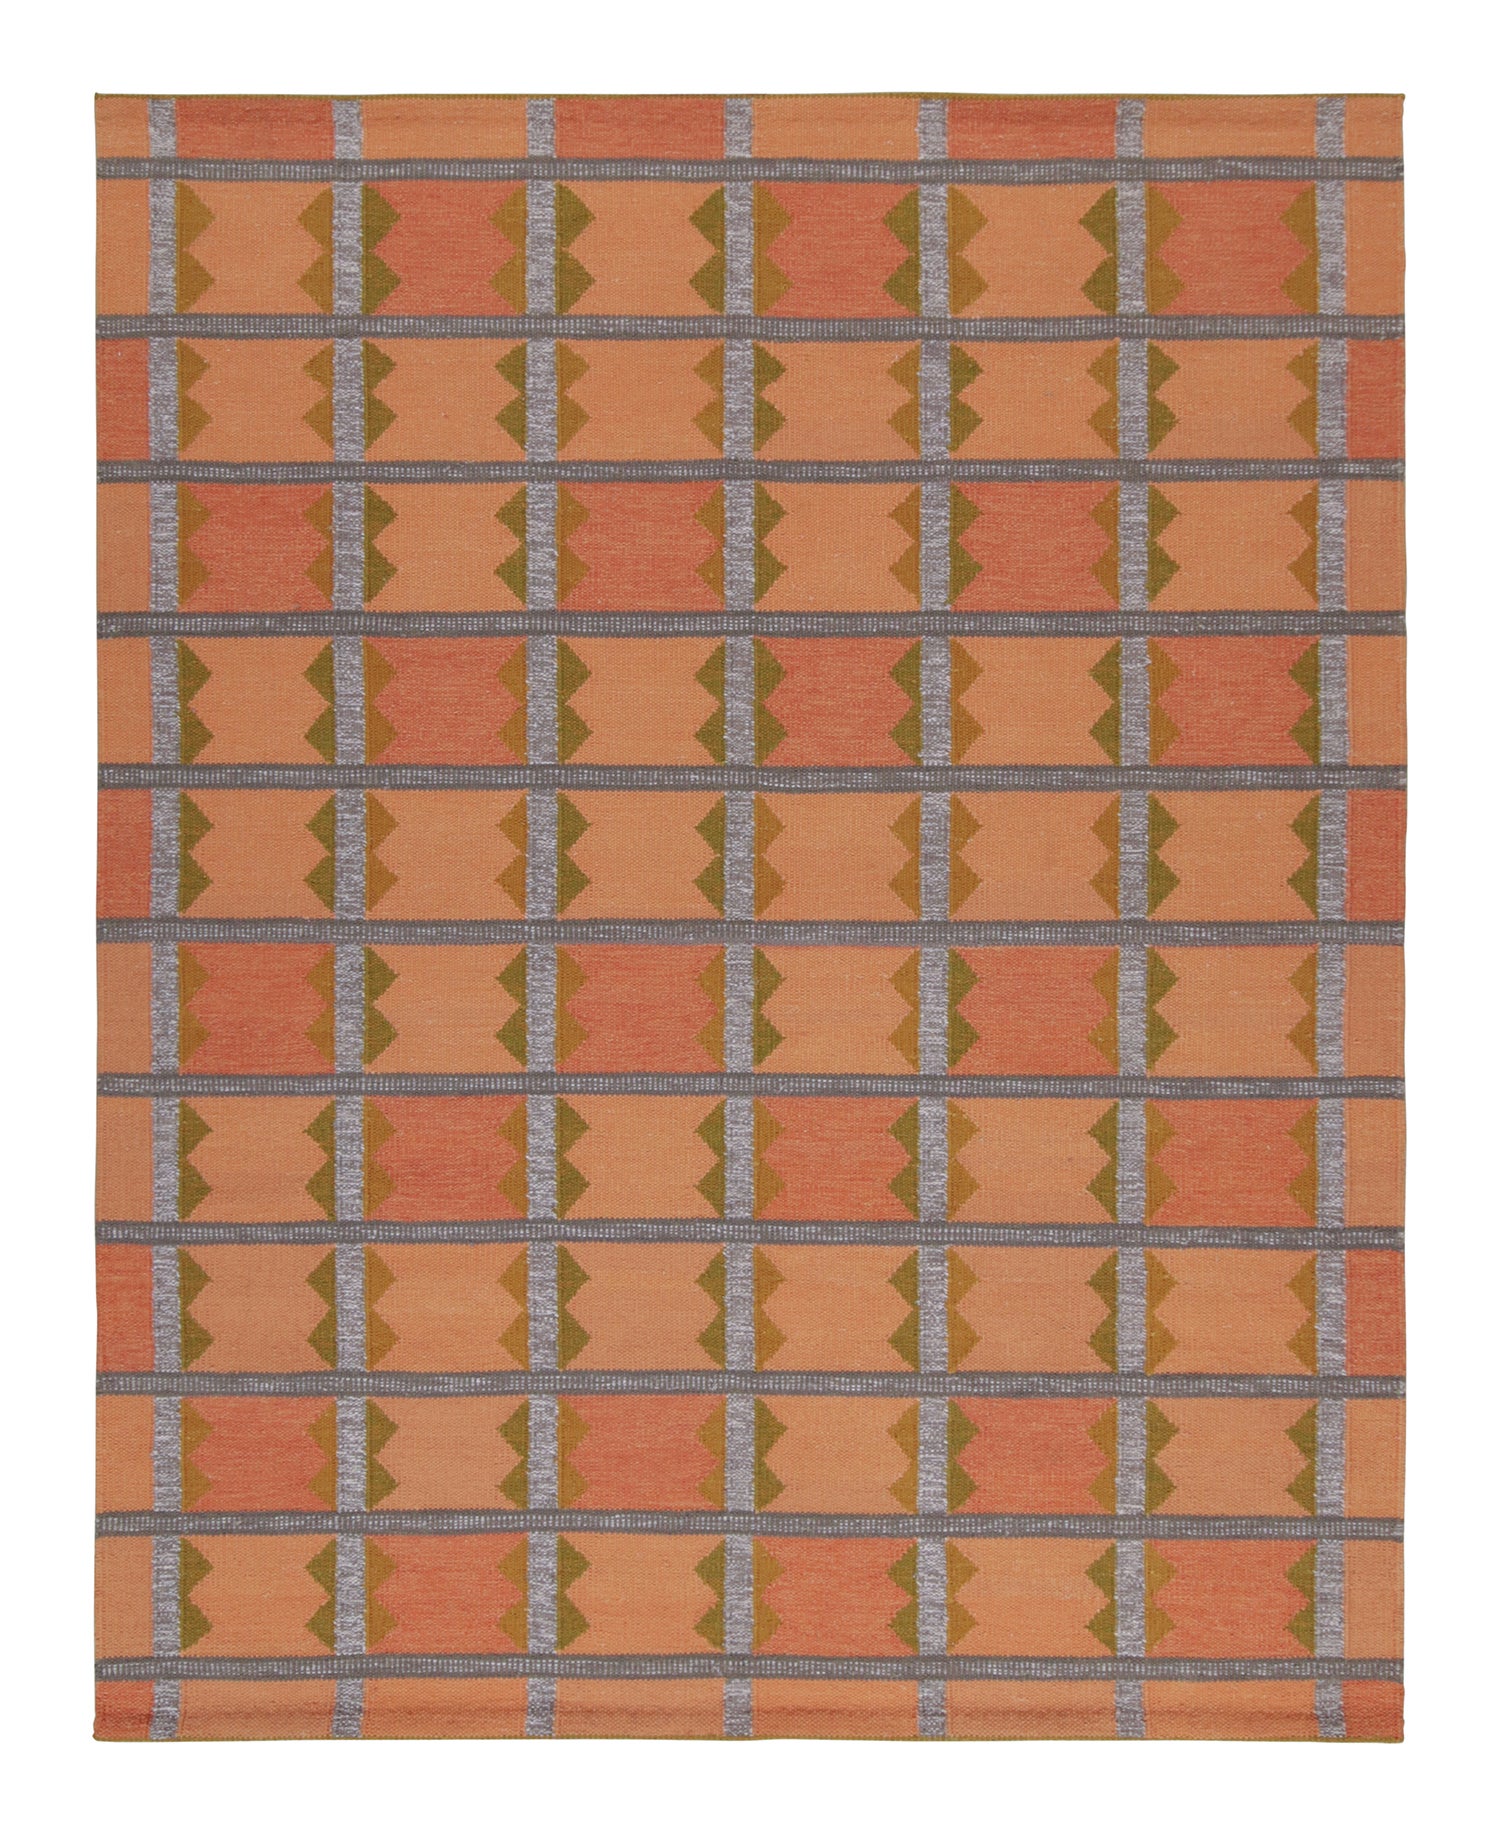 Skandinavischer Kilim von Rug & Kilim in Orange, Grau und Braun mit geometrischem Muster